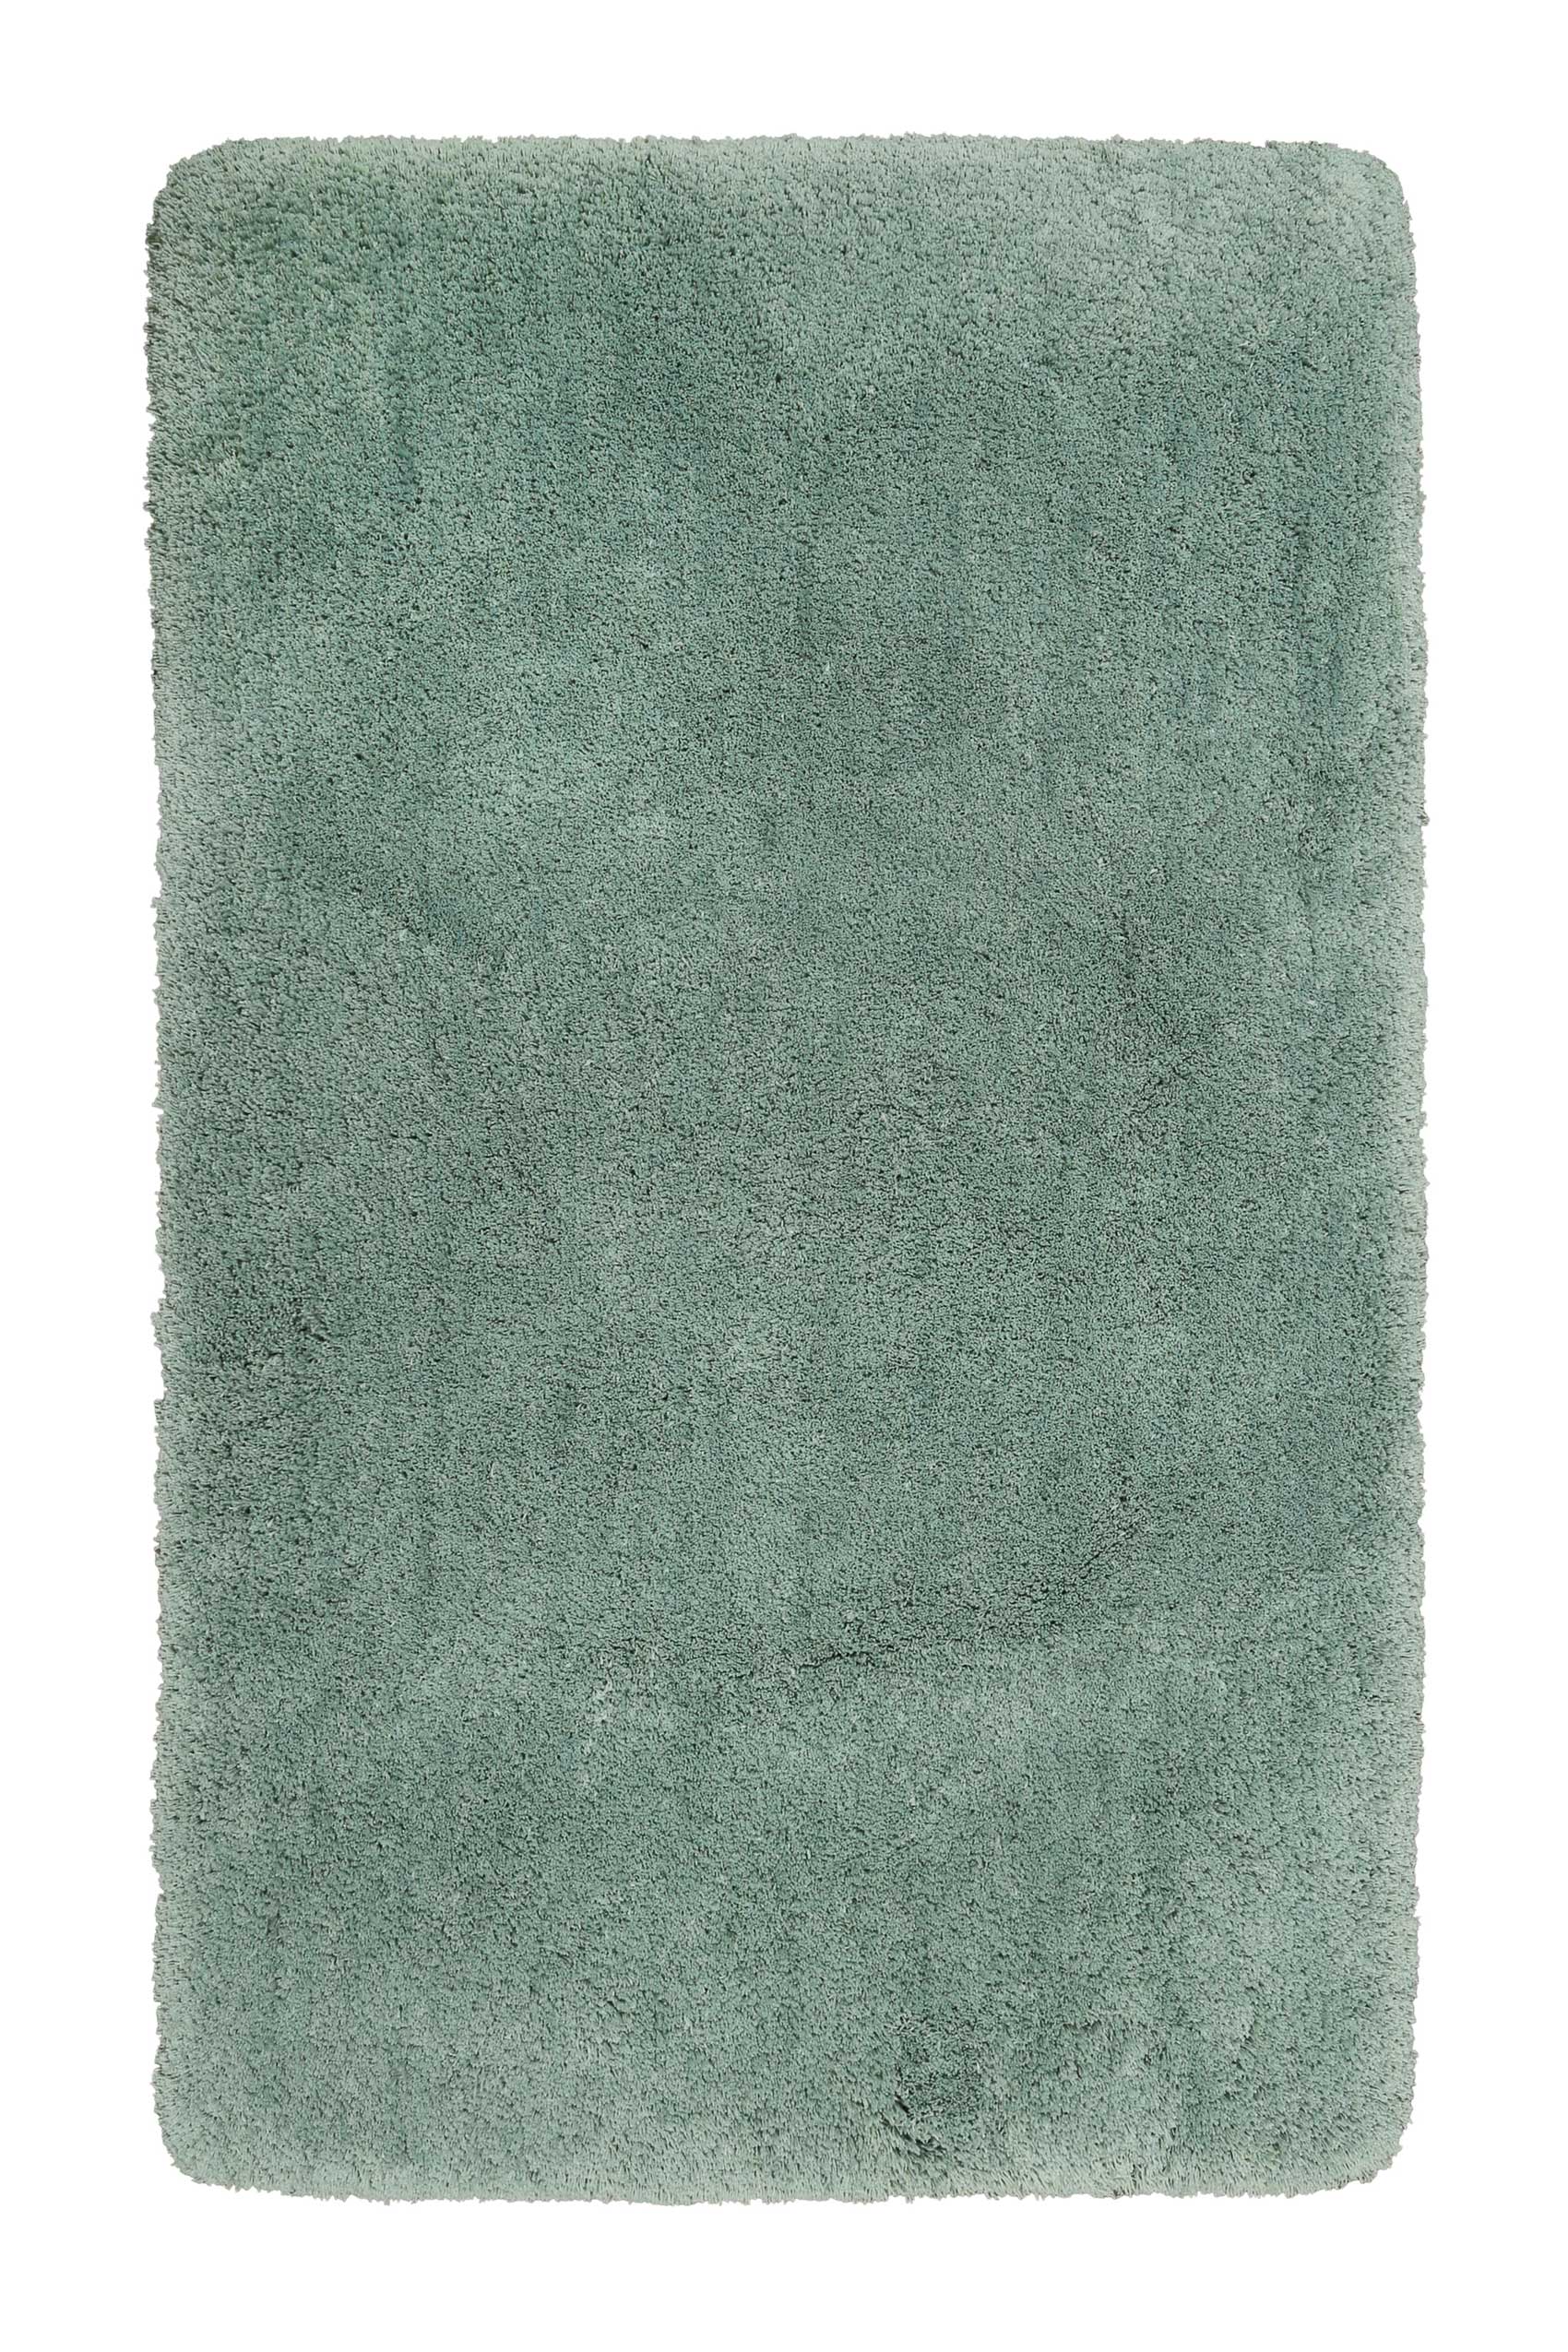 tapis de bain microfibre très doux uni vert sauge 55x65